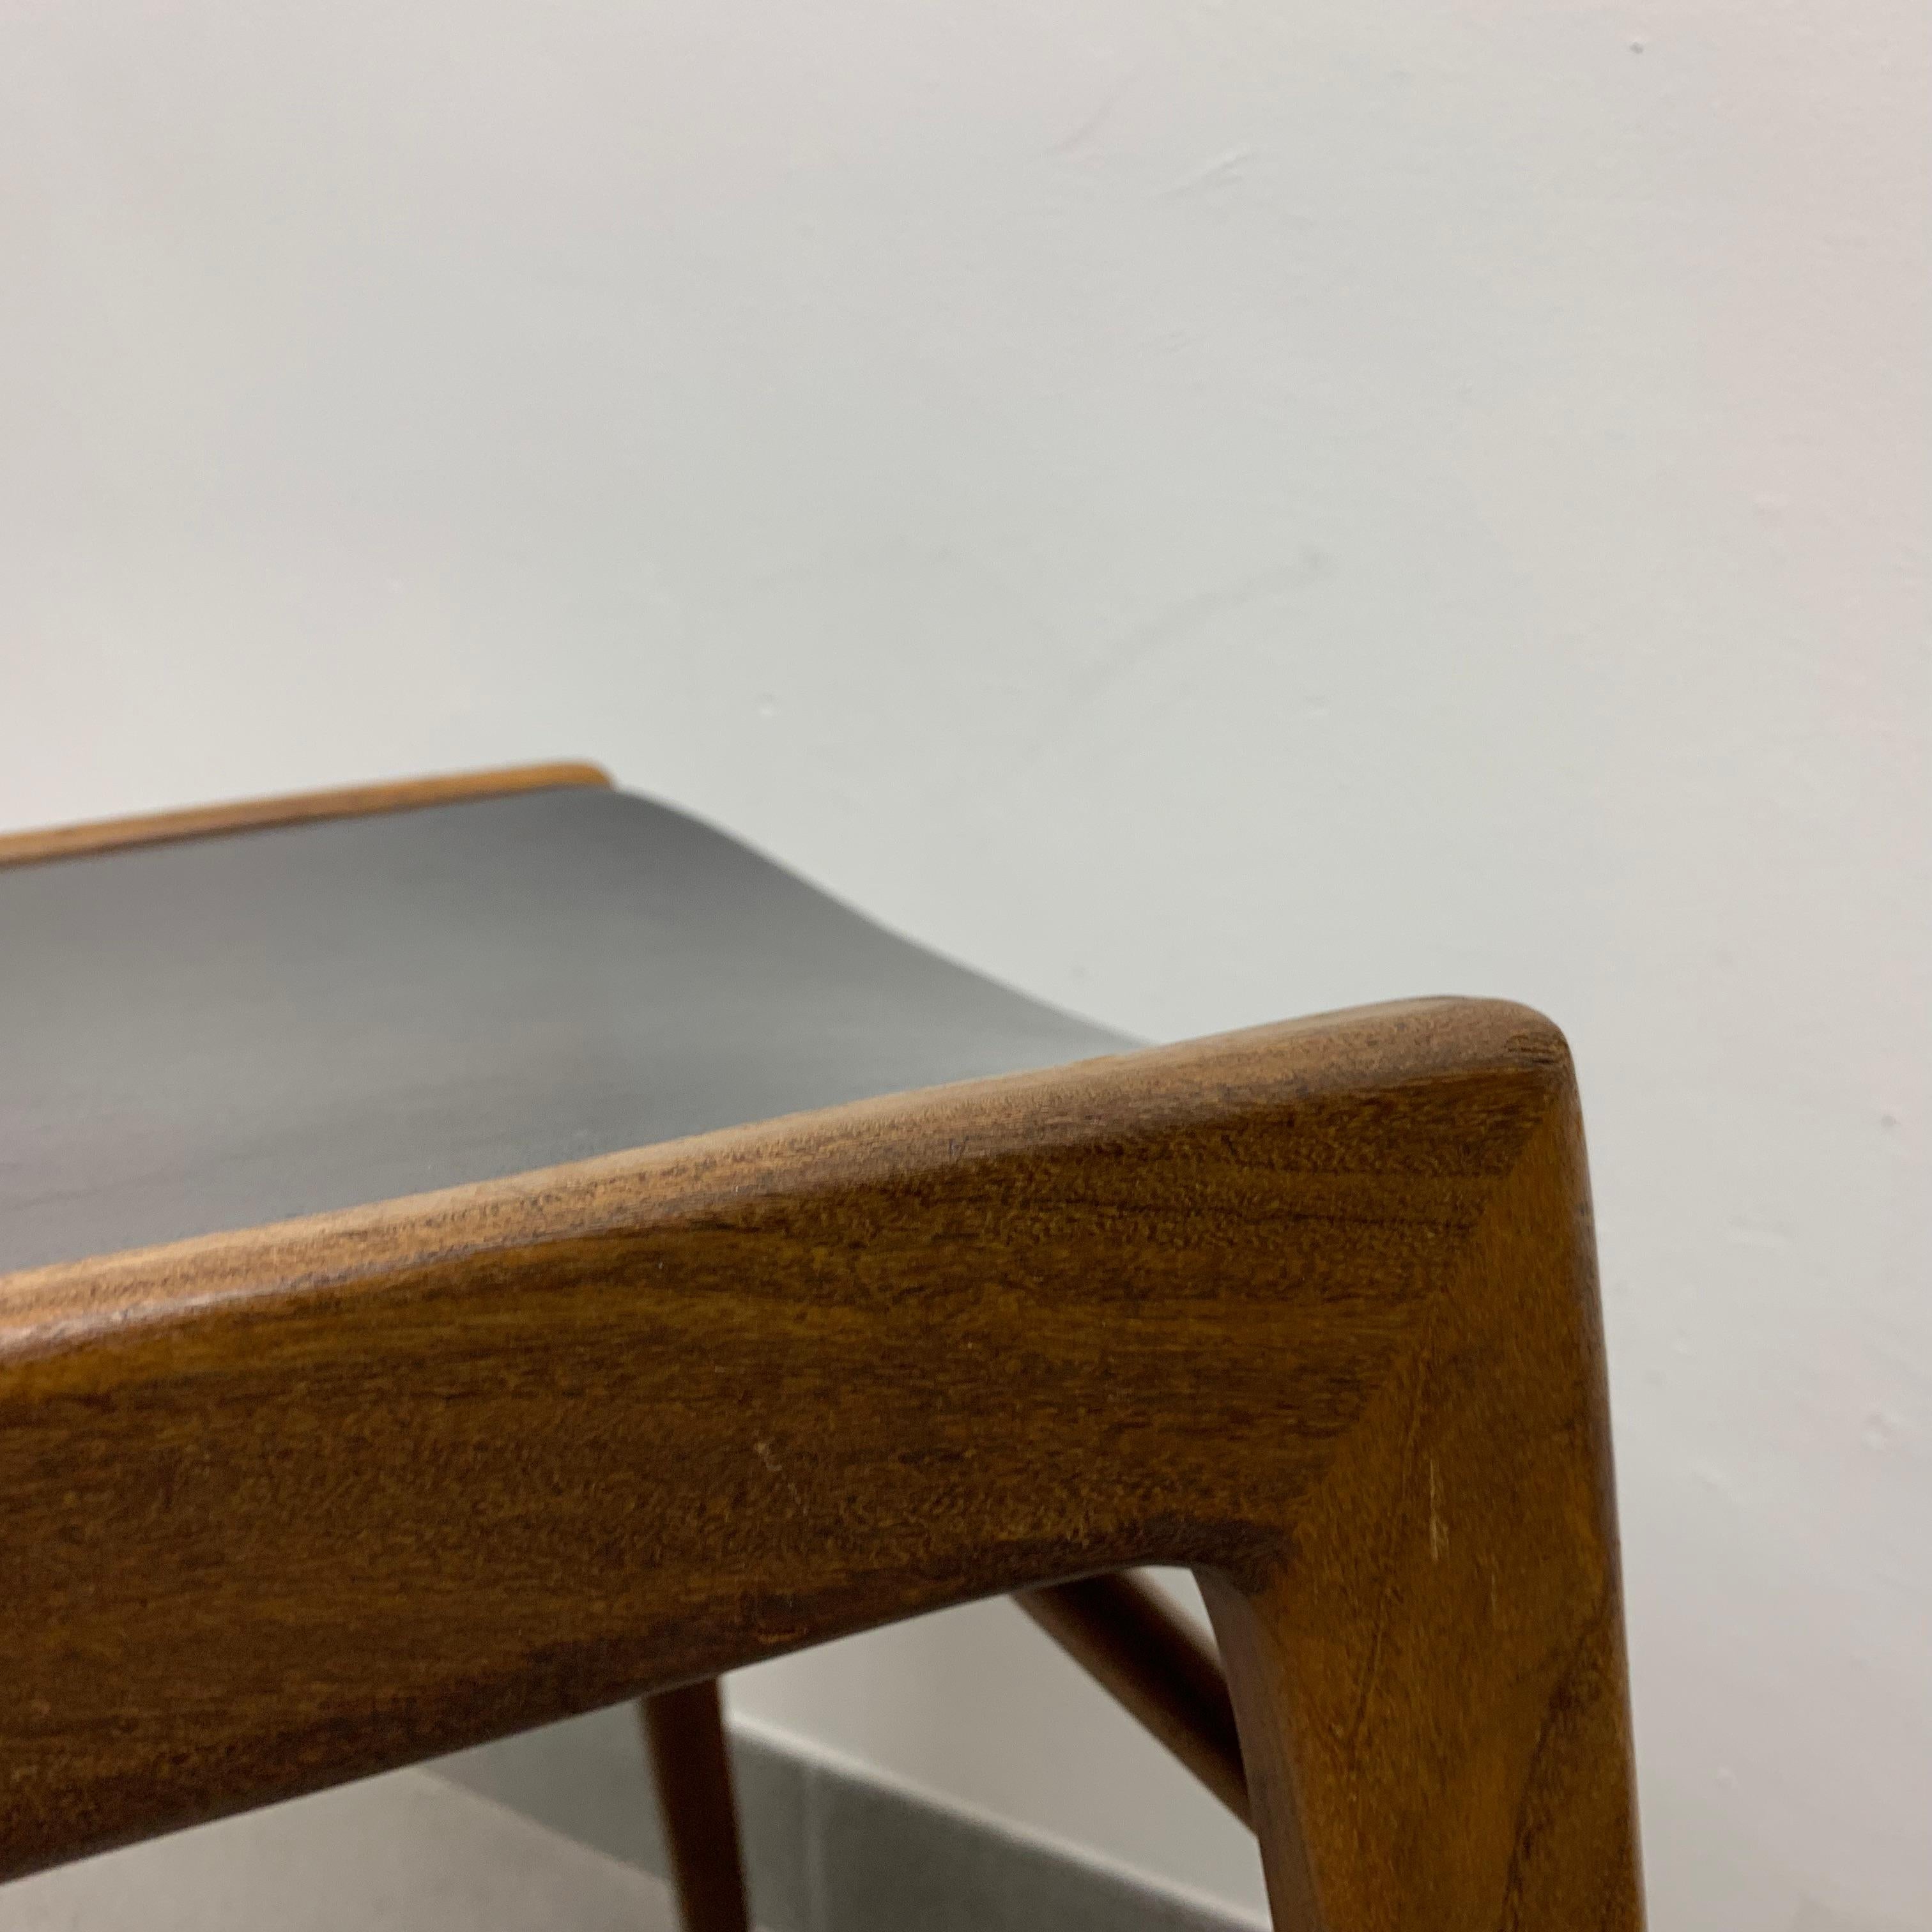 Hartmut Lohmeyer for Wilkhahn 1950’s dining chair teak wood design For Sale 2